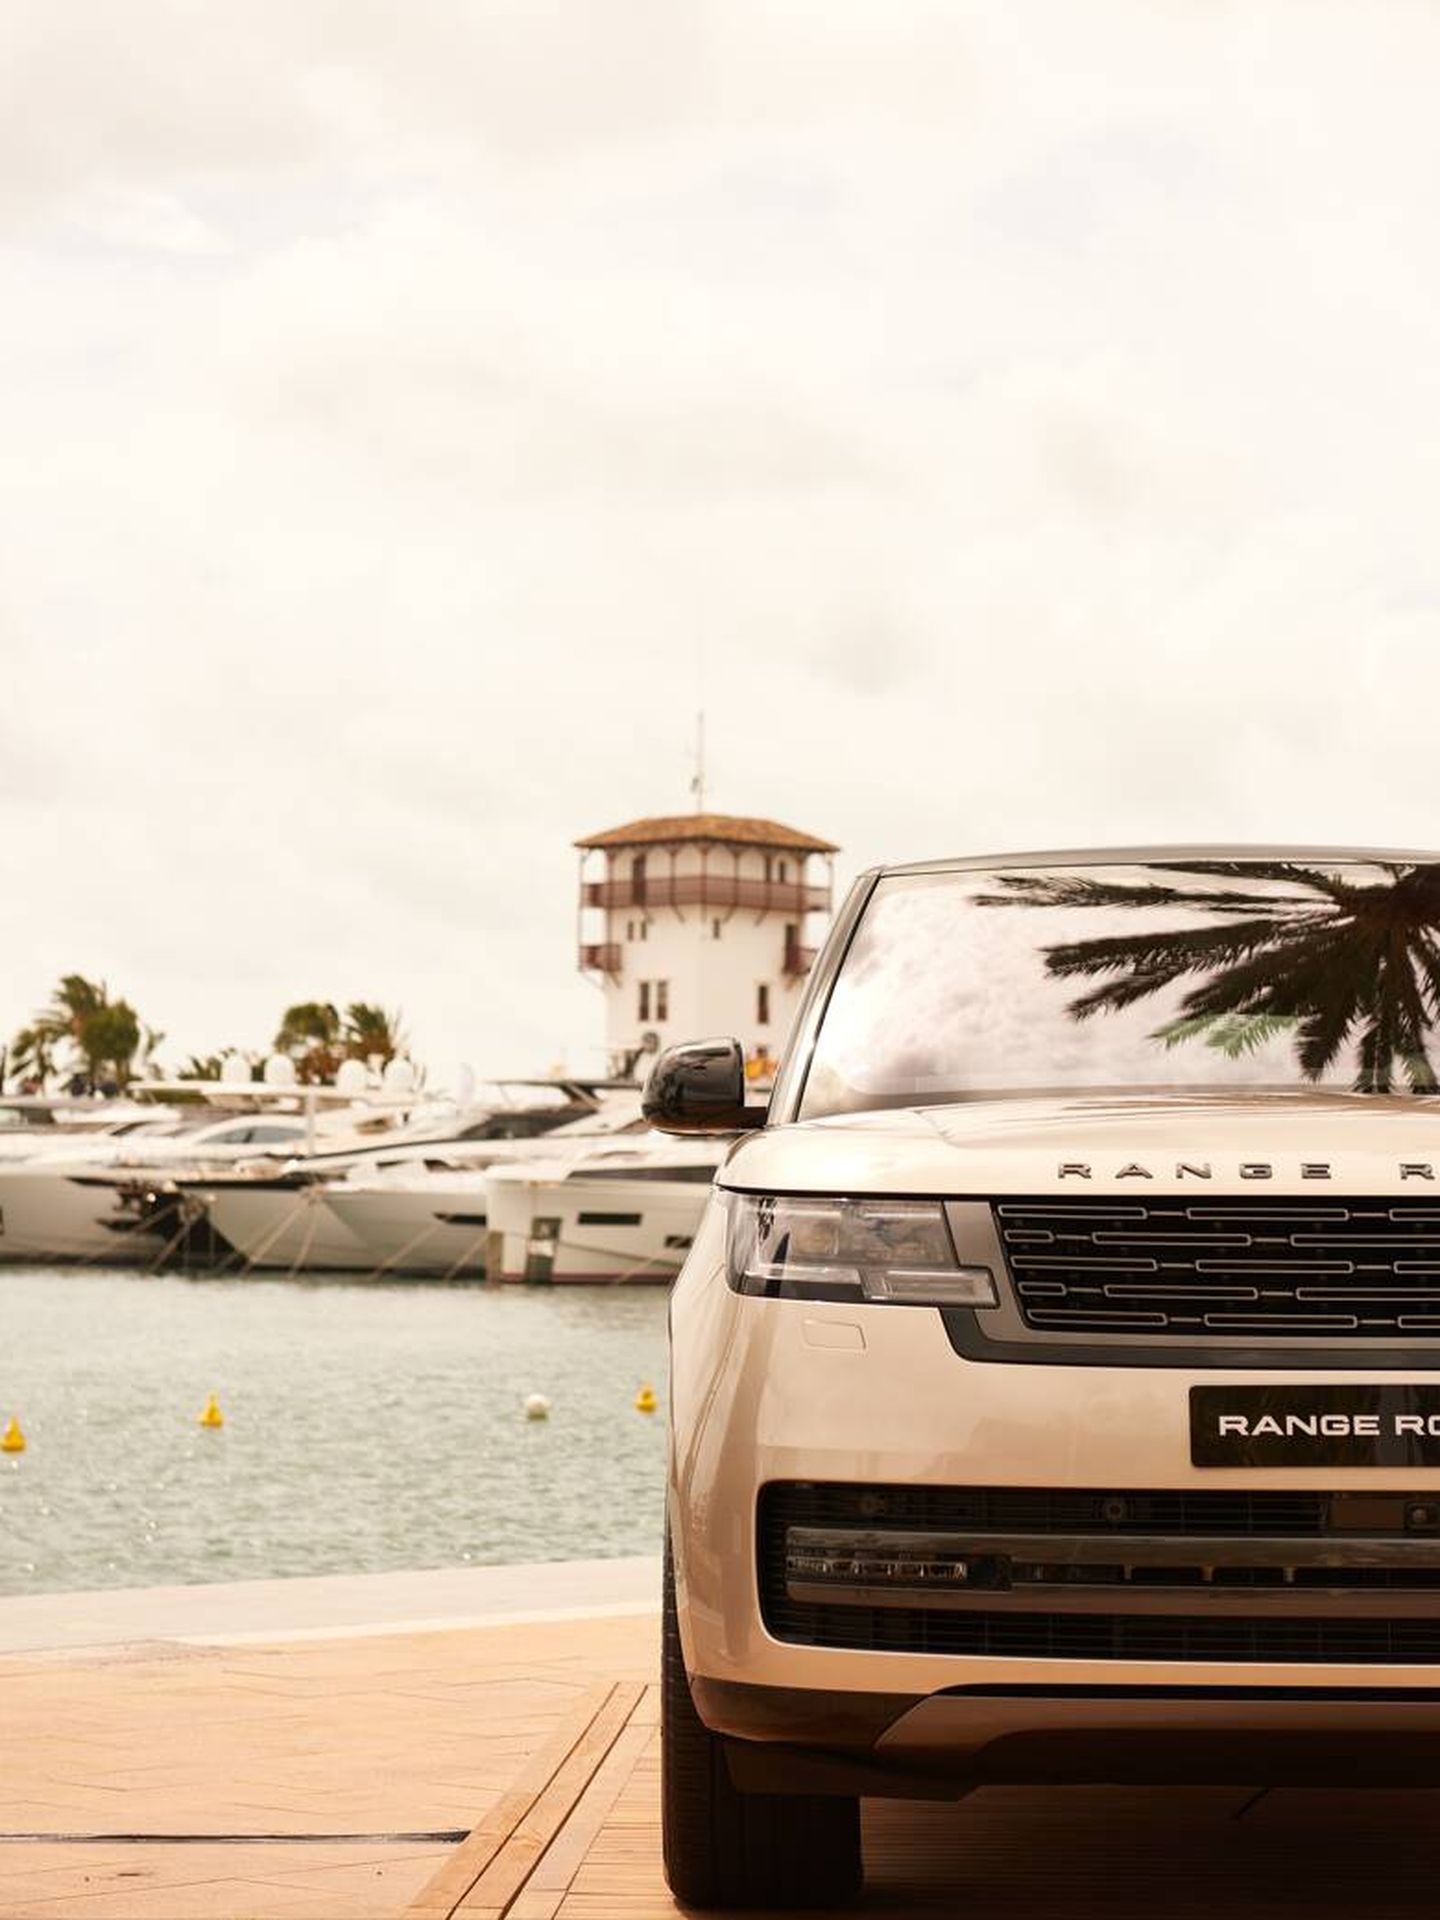 Range Rover House, lujo sobre ruedas en Puerto Portals. (Cortesía)